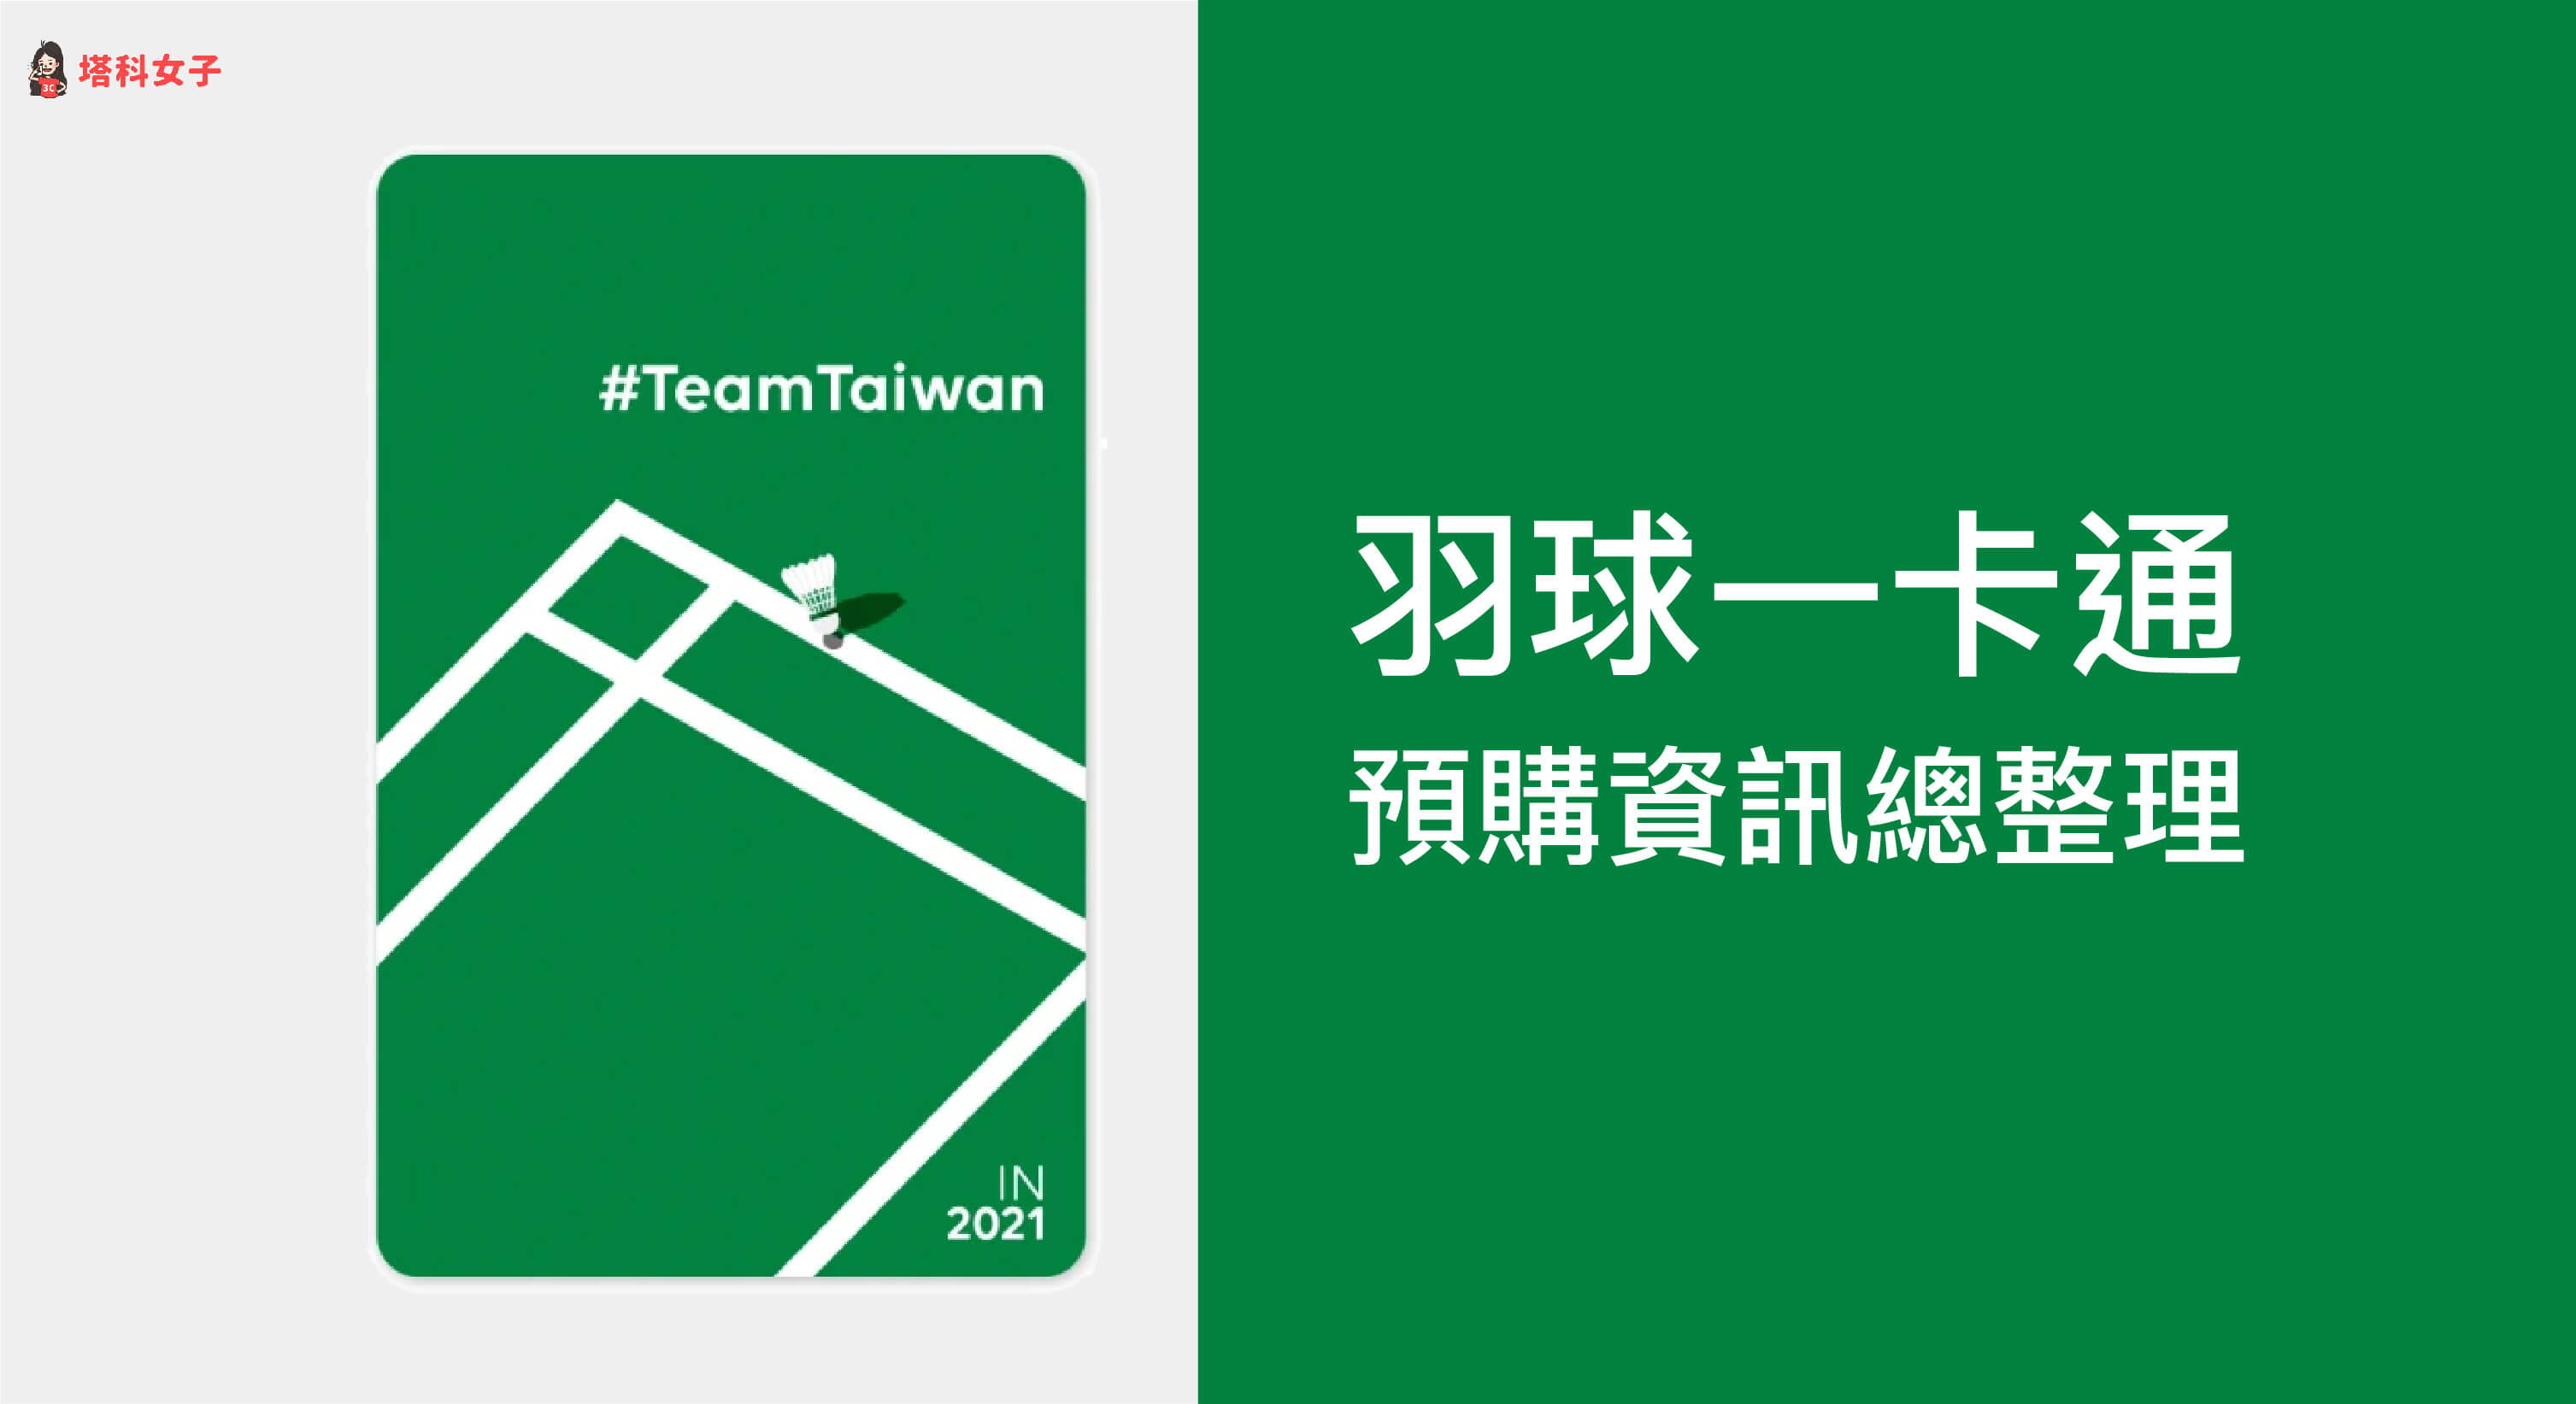 羽球一卡通如何預購？羽球 Team Taiwan IN 2021 一卡通預購教學！